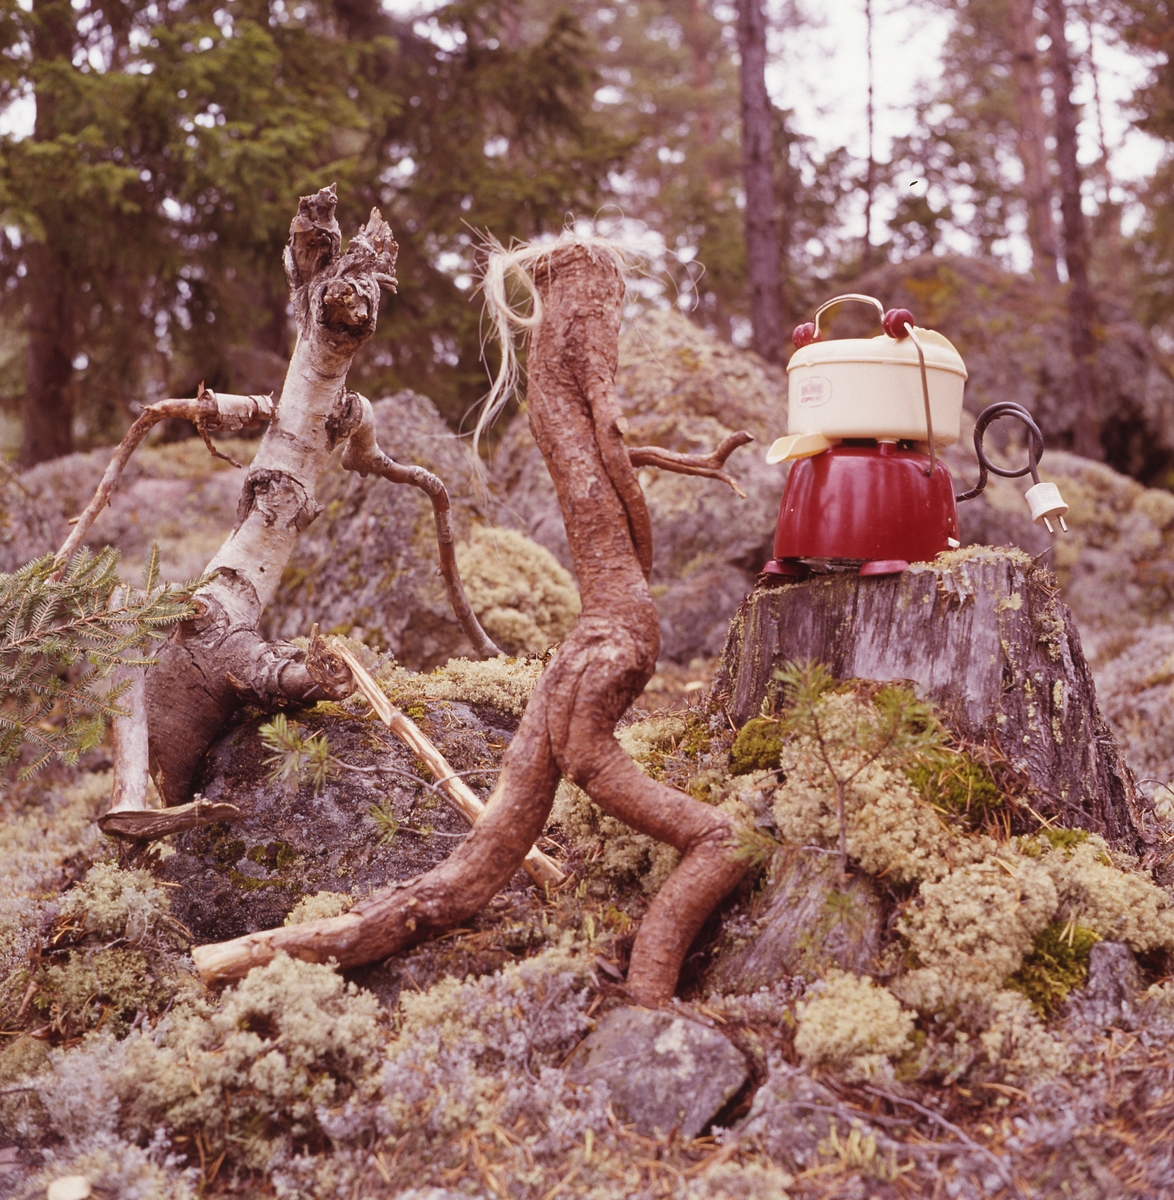 Trätrollet Skrälla Skrälle ute i skogen med en annan träfigur. På en stubbe står en elektrisk apparat av något slag.